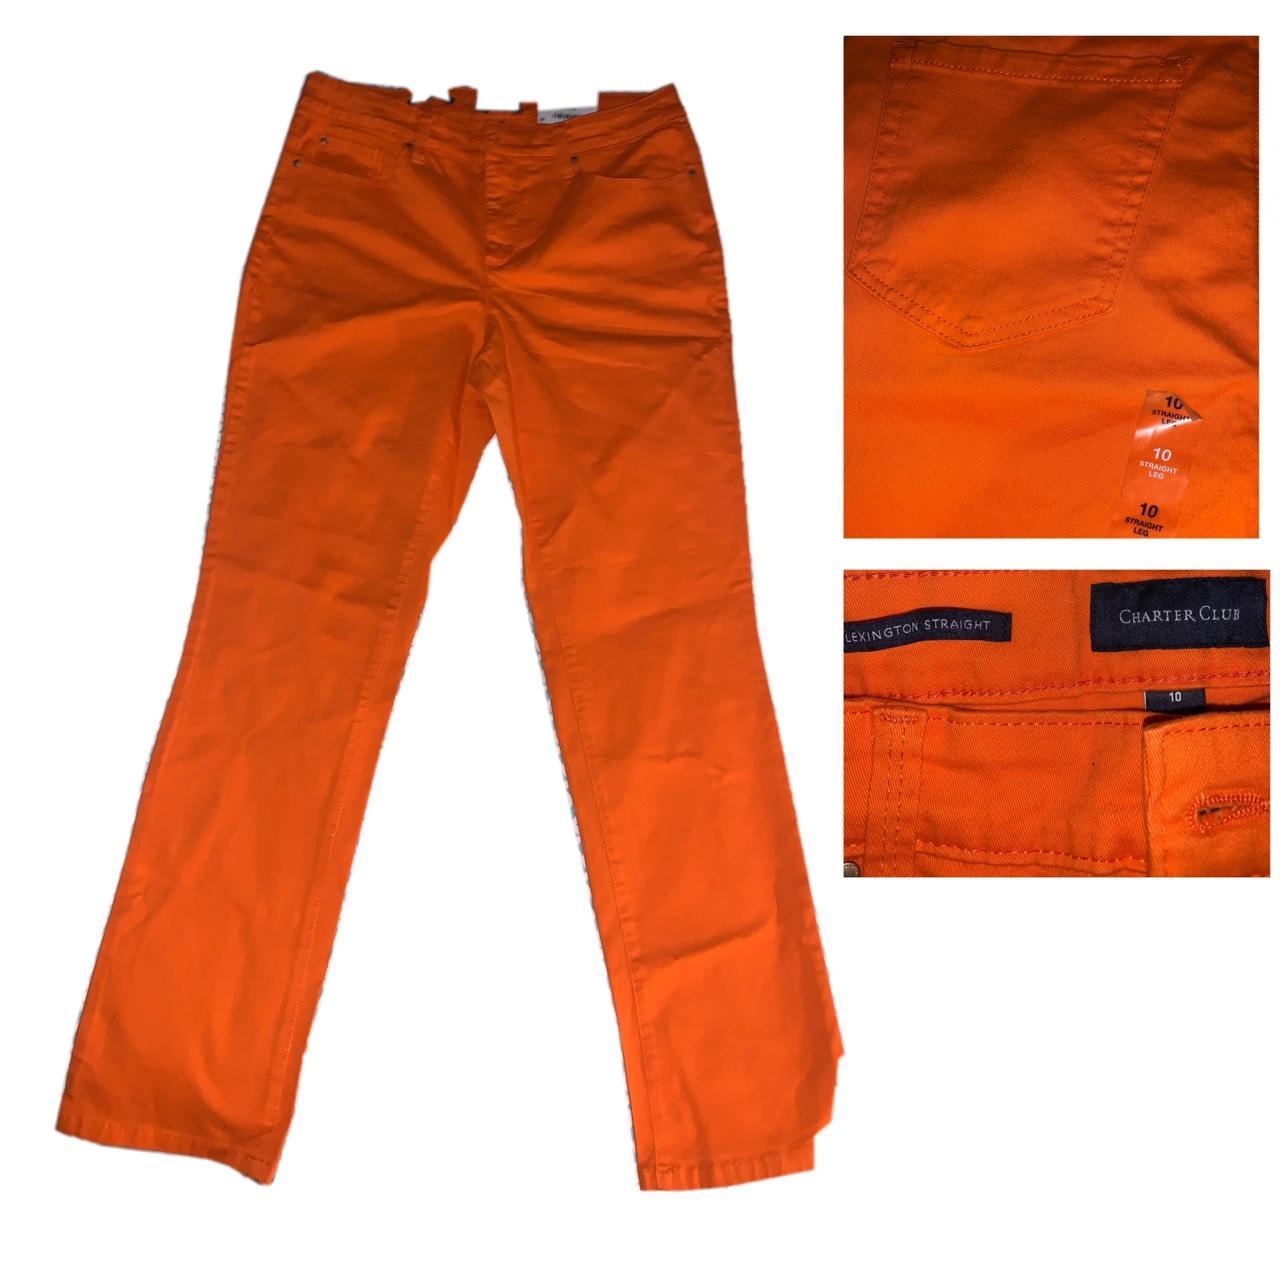 Charter Club Women's Orange Trousers | Depop